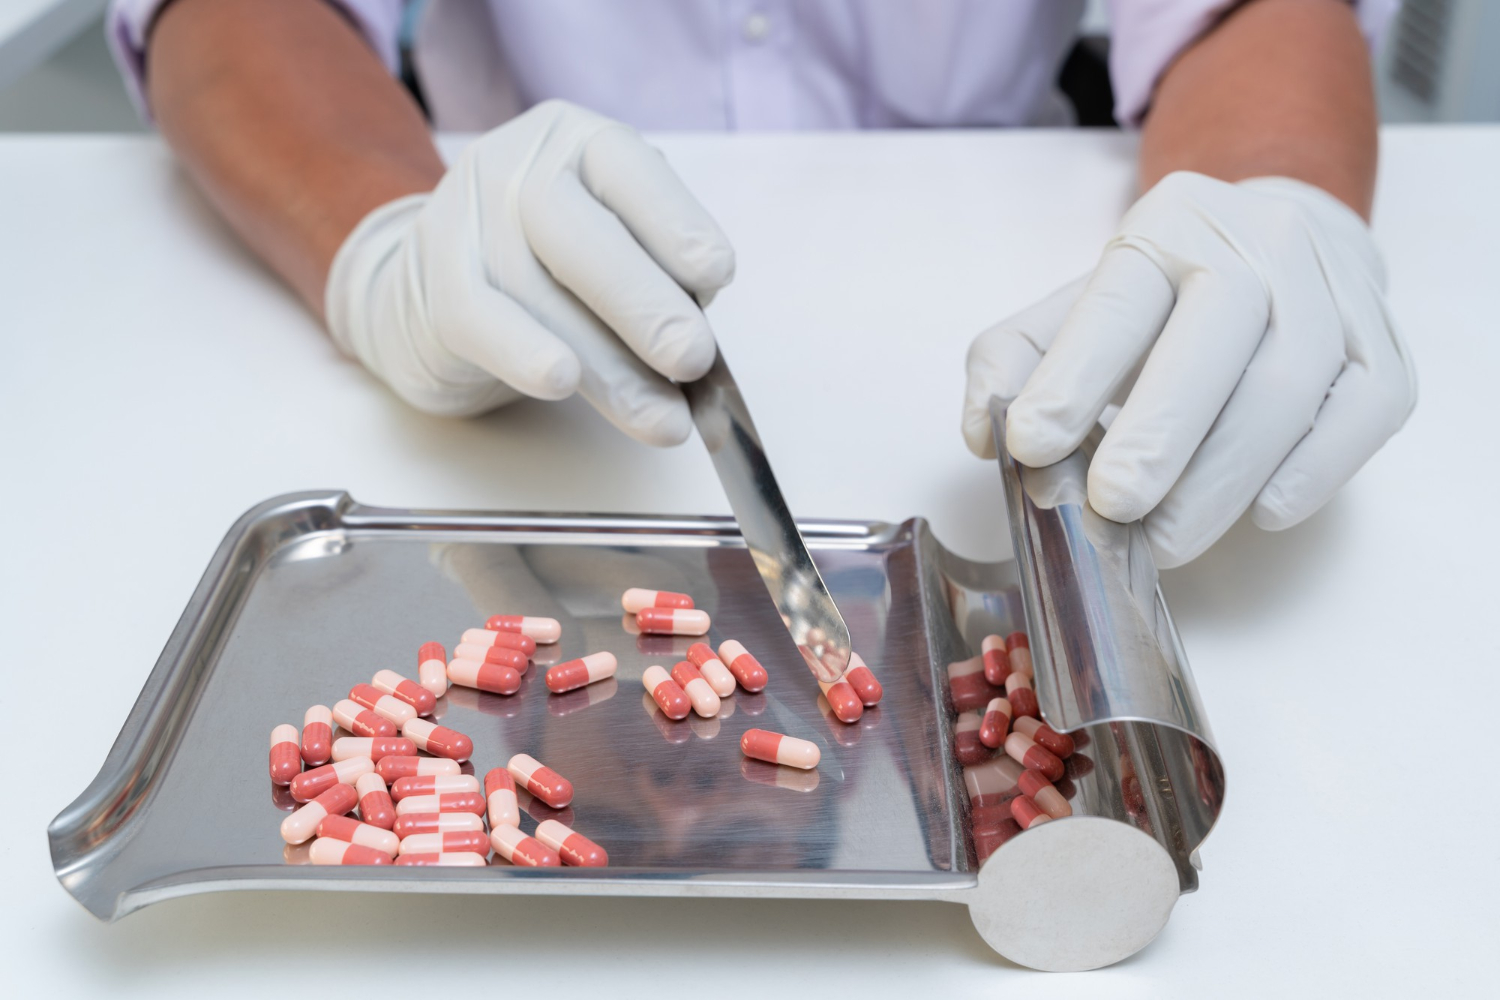 citomed 50 mg balkan pharmaceuticals - Nie dla wszystkich